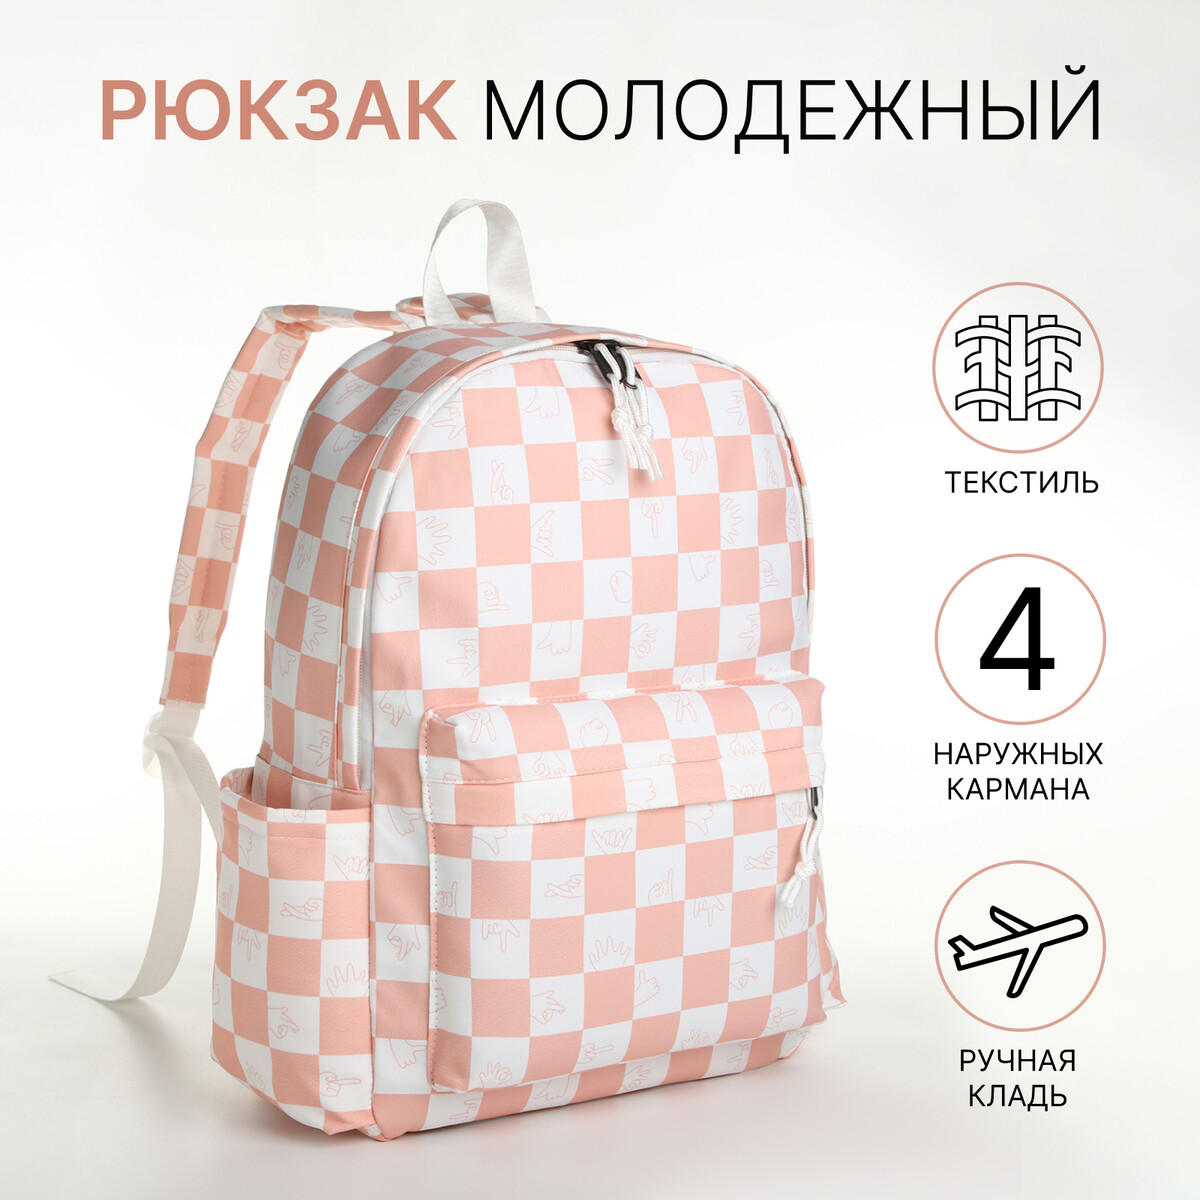 Рюкзак молодежный из текстиля, 4 кармана, цвет белый/розовый